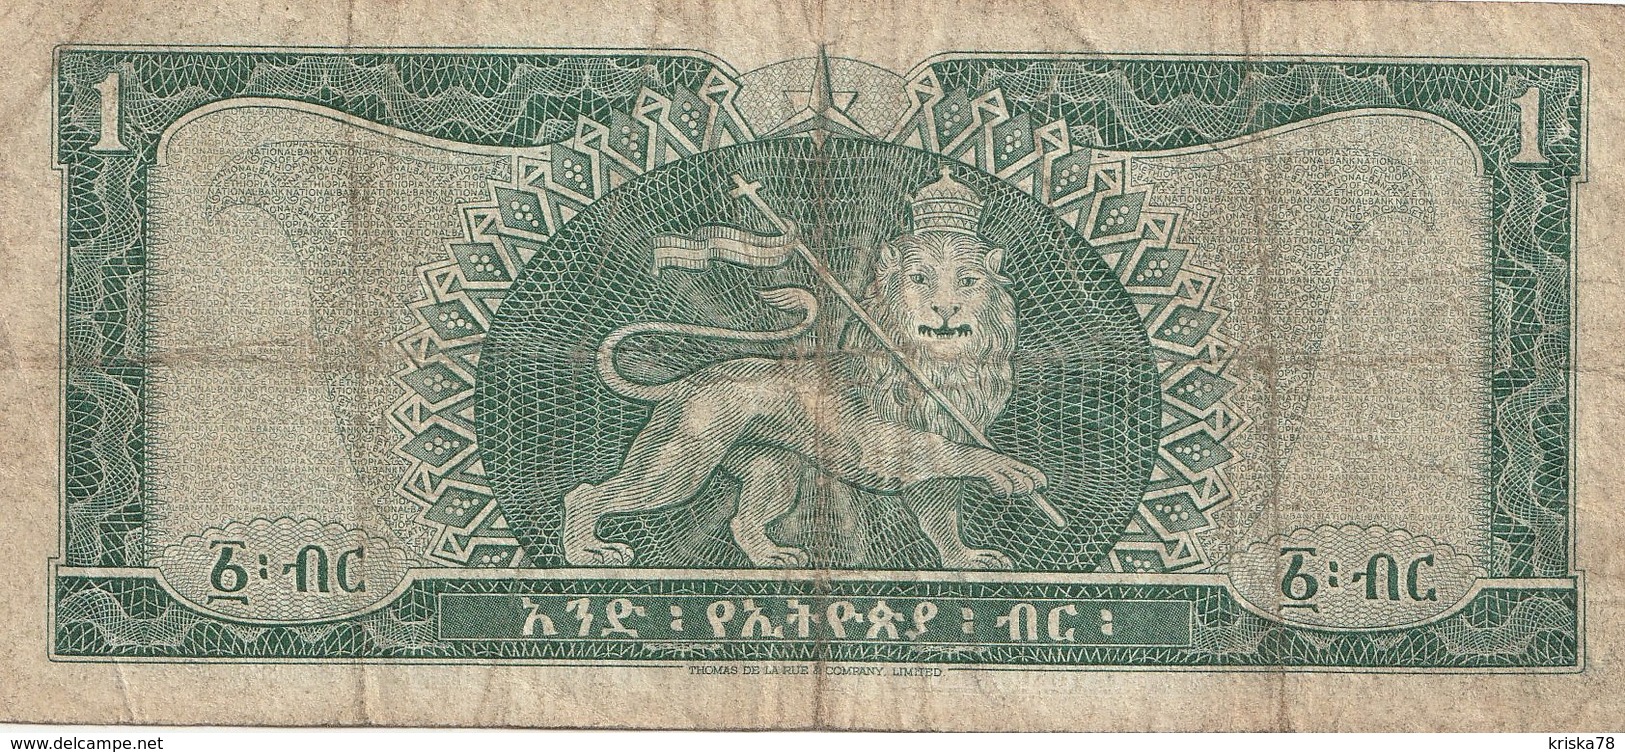 1 DOLLAR 1966 - Ethiopia